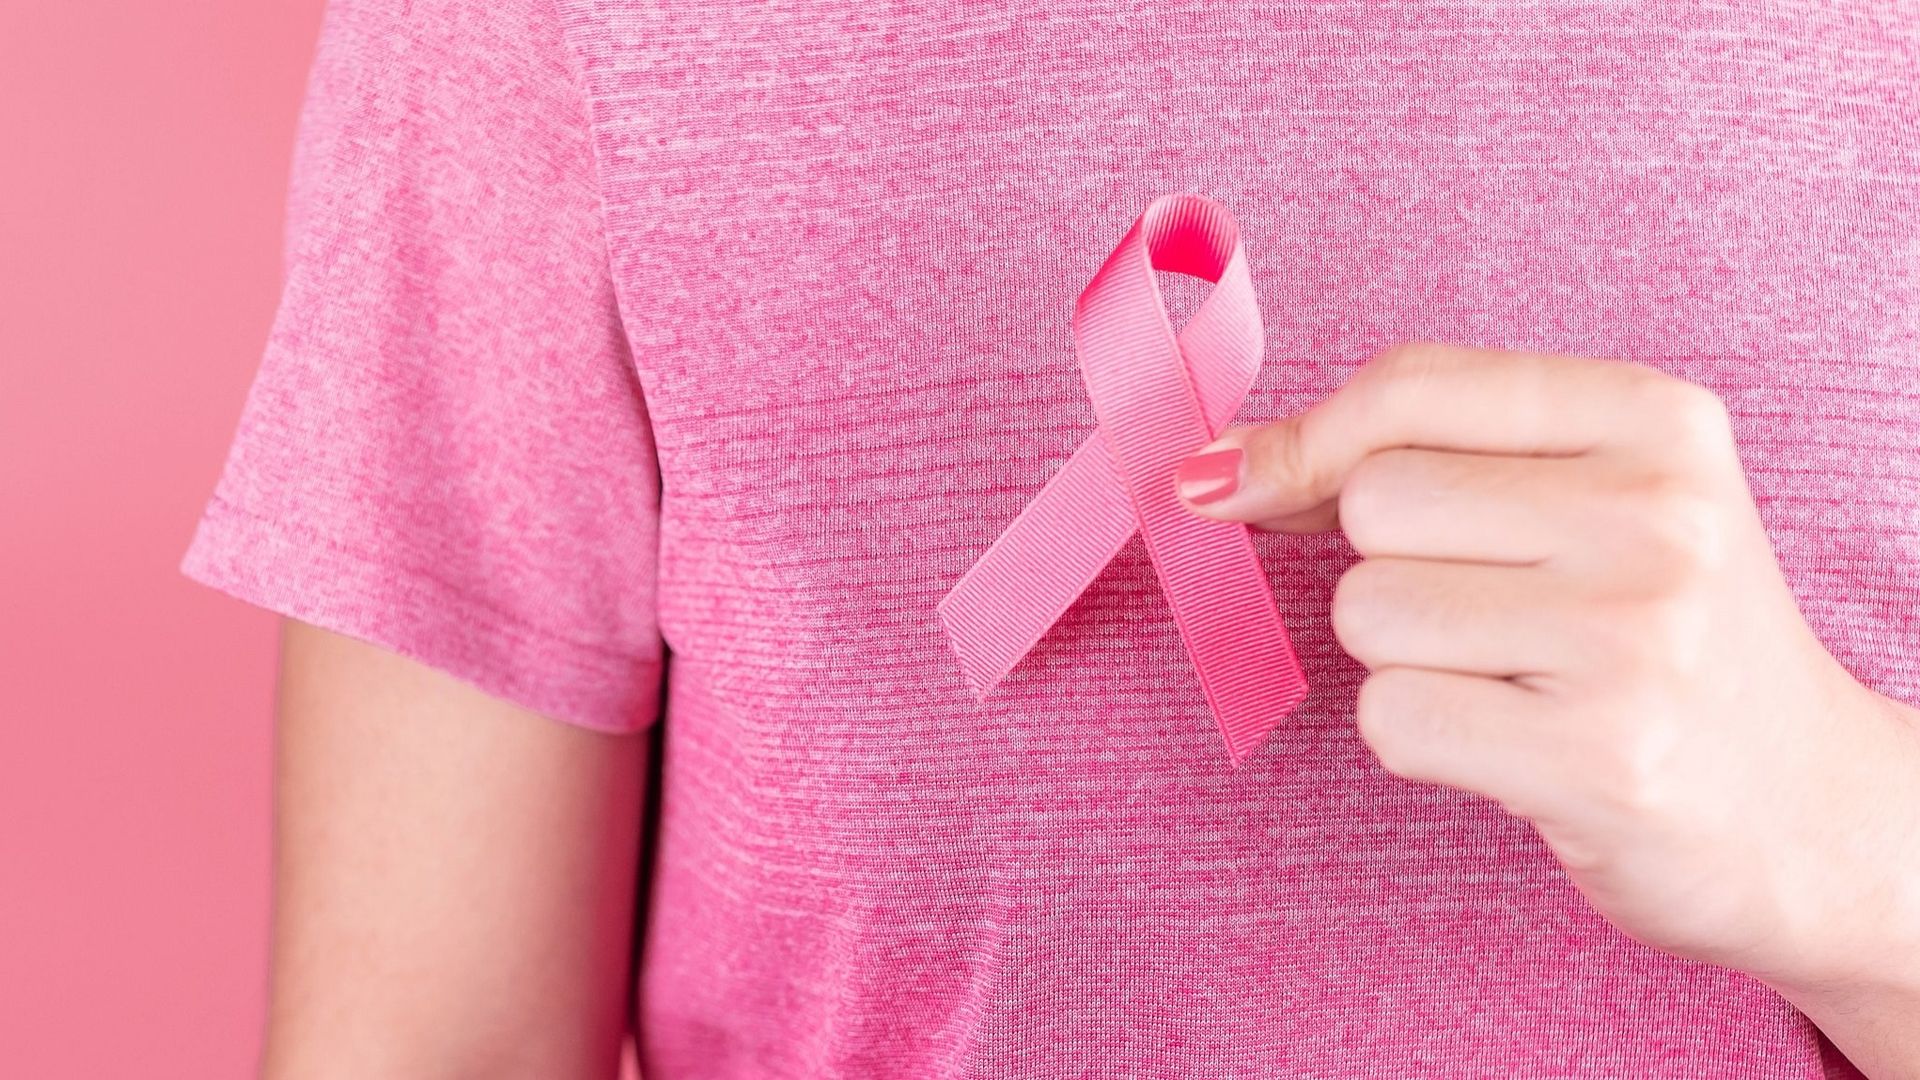 Une étude encourageante pour mieux traiter certains cancers du sein.